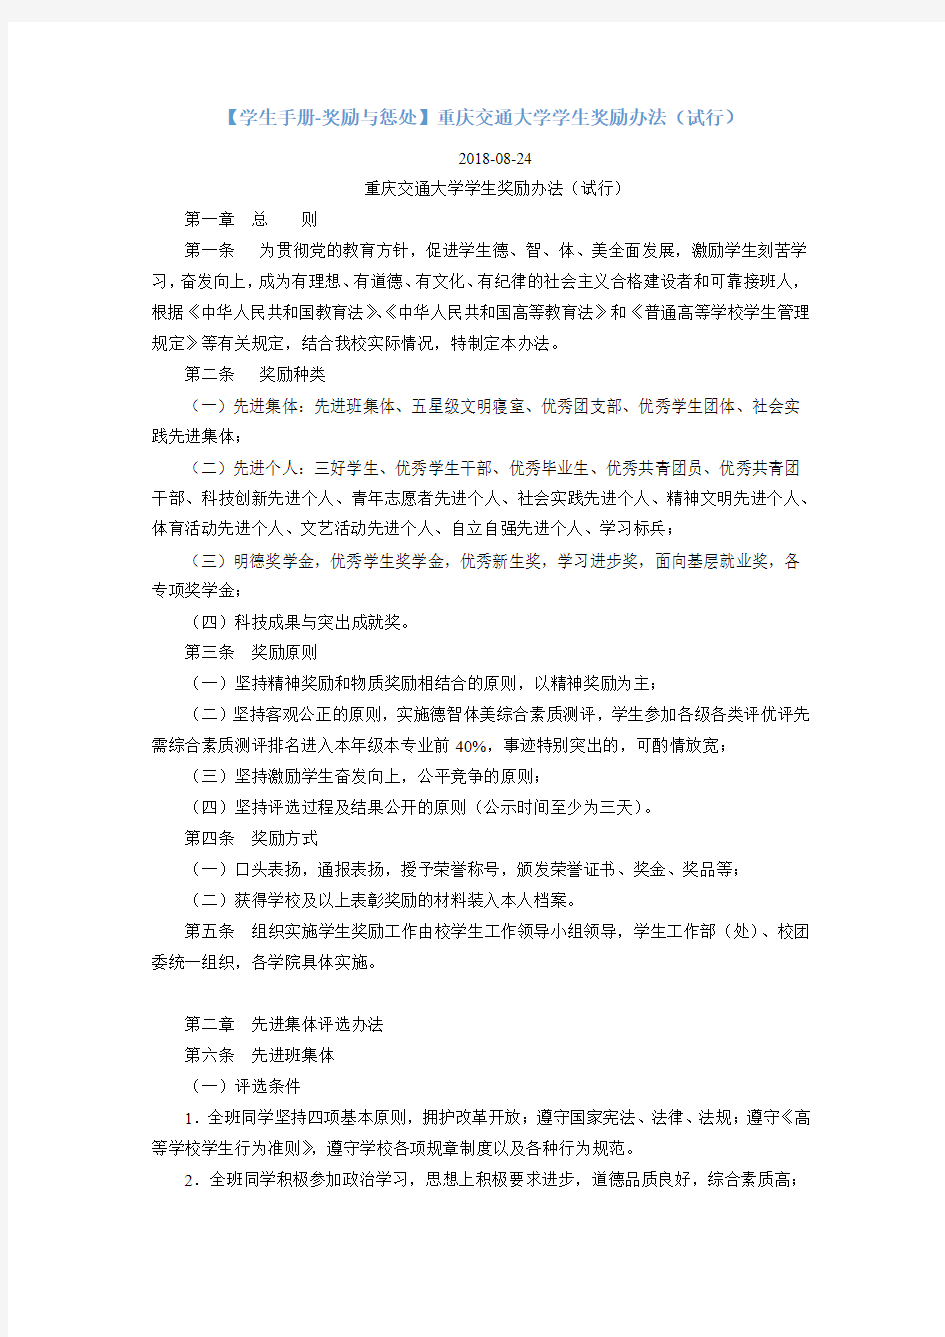 14【学生手册-奖励与惩处】重庆交通大学学生奖励办法(试行)